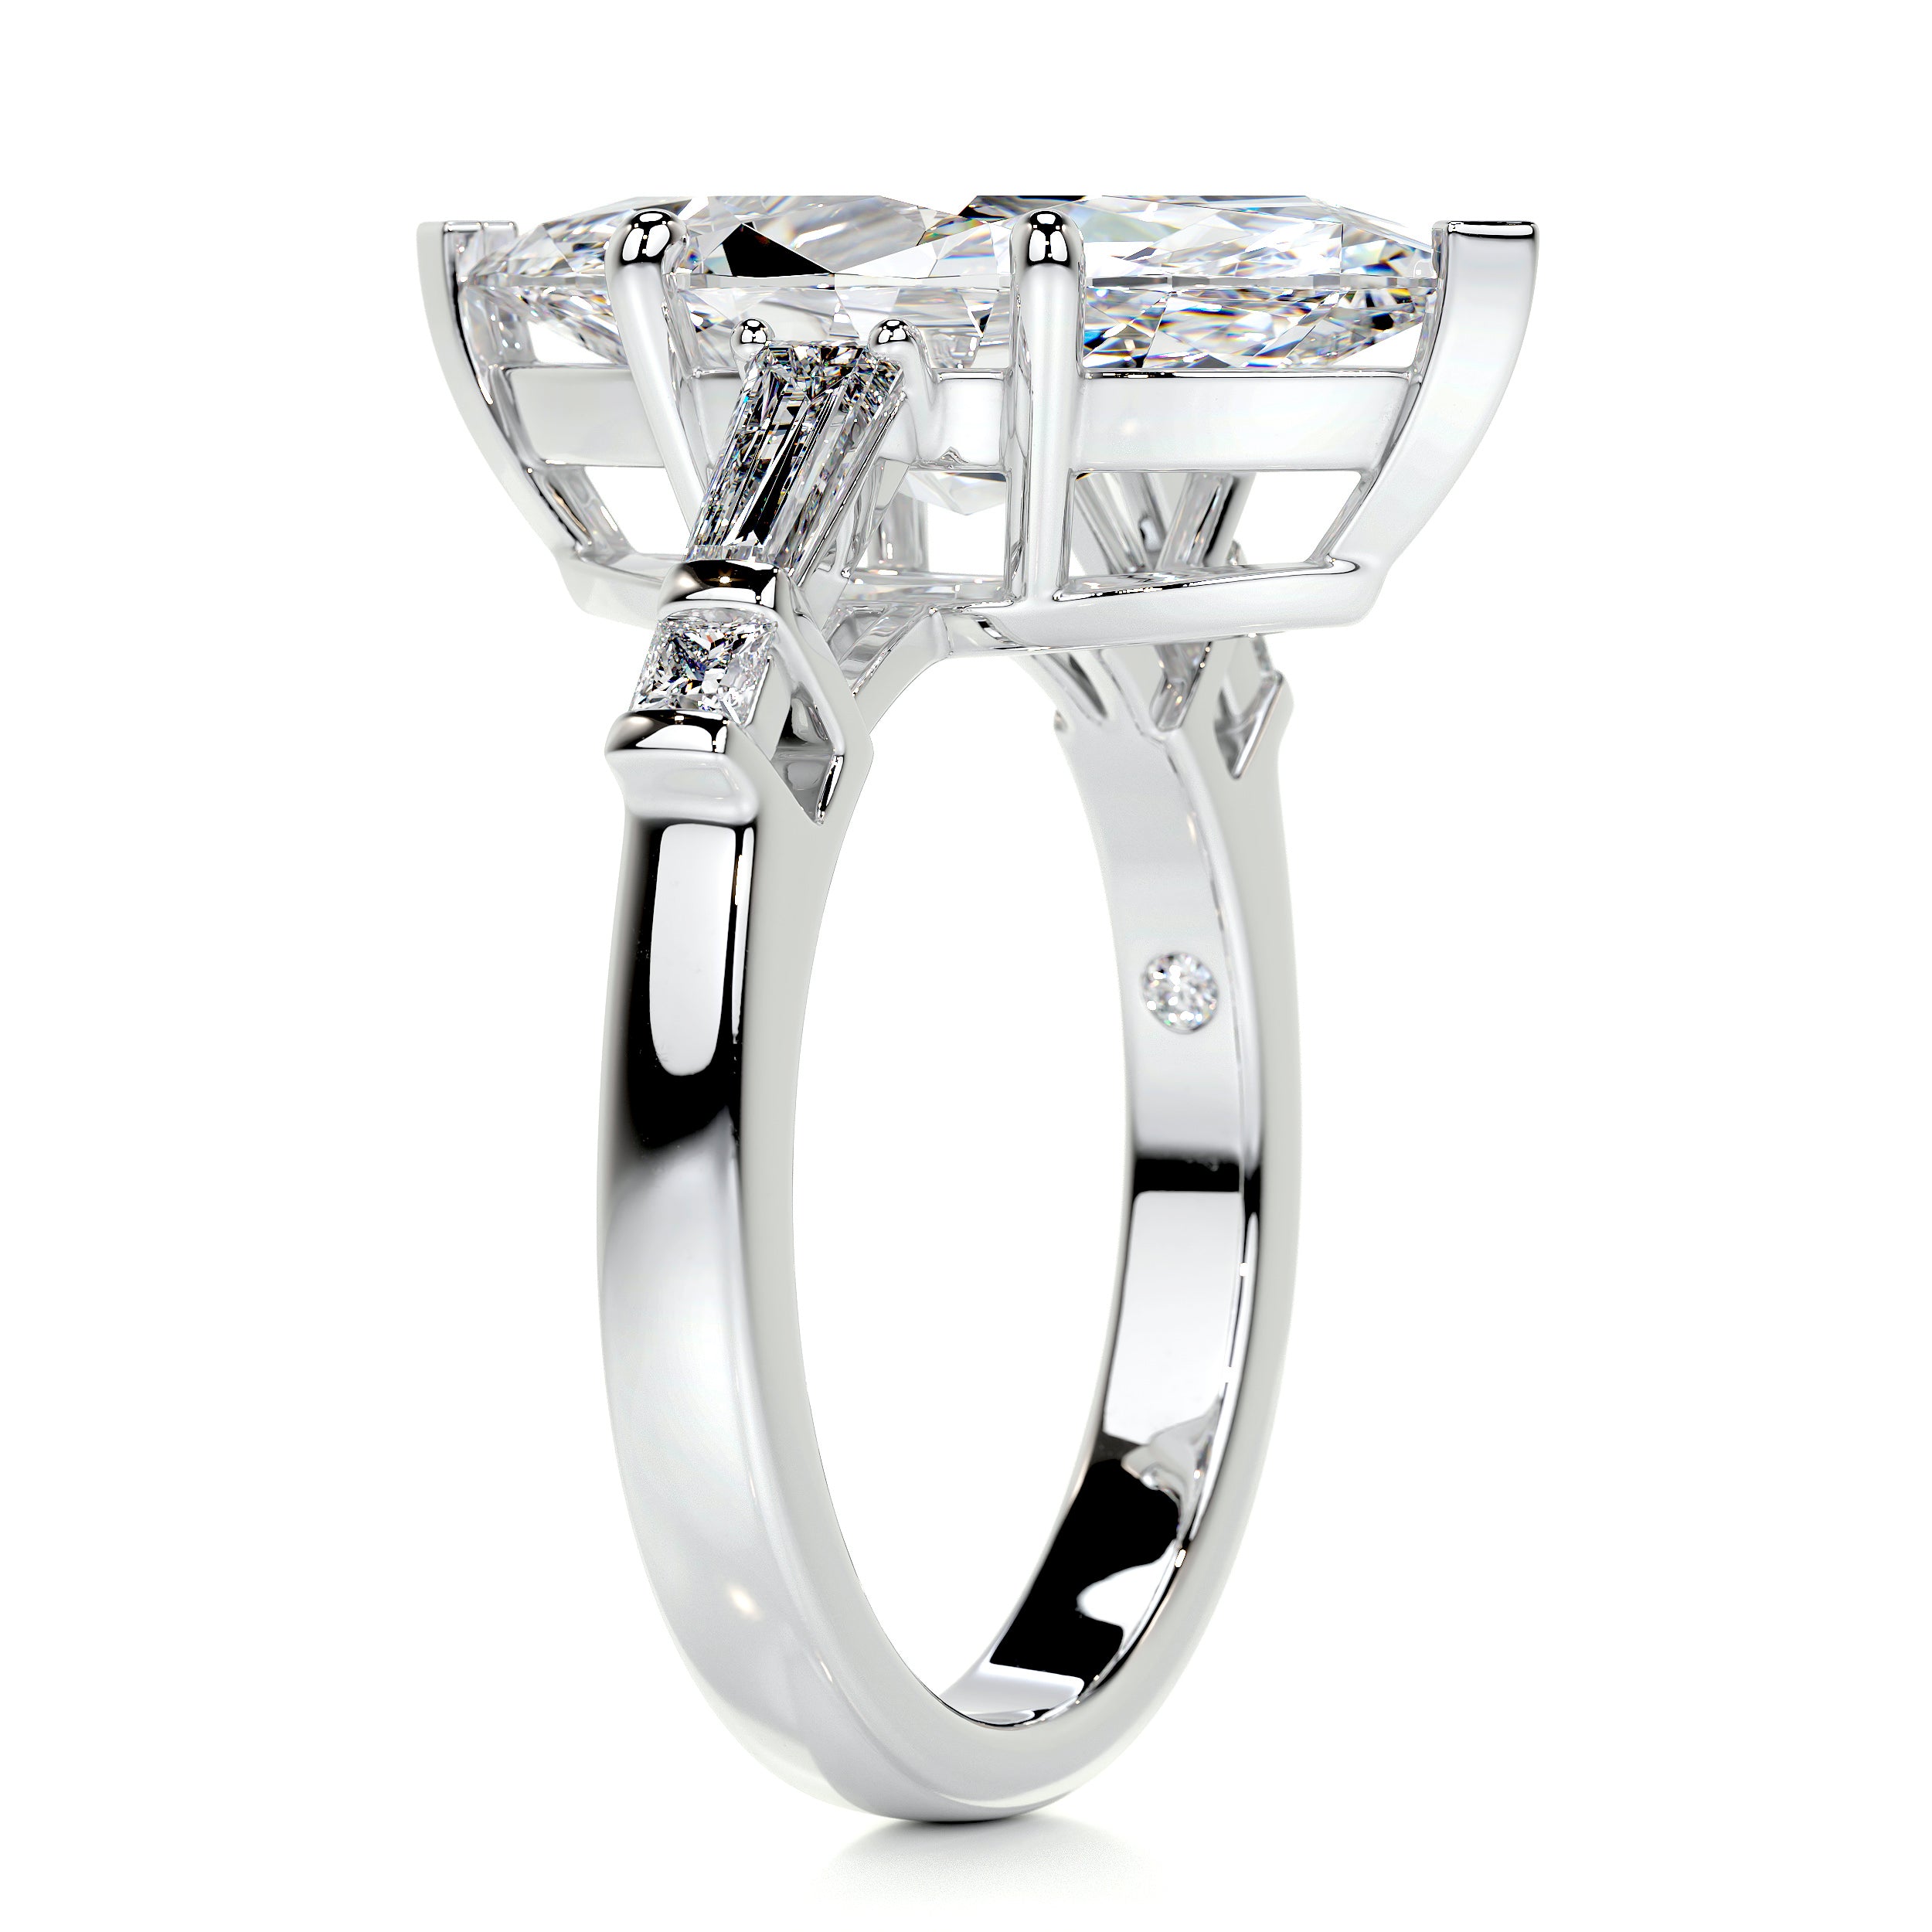 Tessa Diamond Engagement Ring   (5.3 Carat) -Platinum